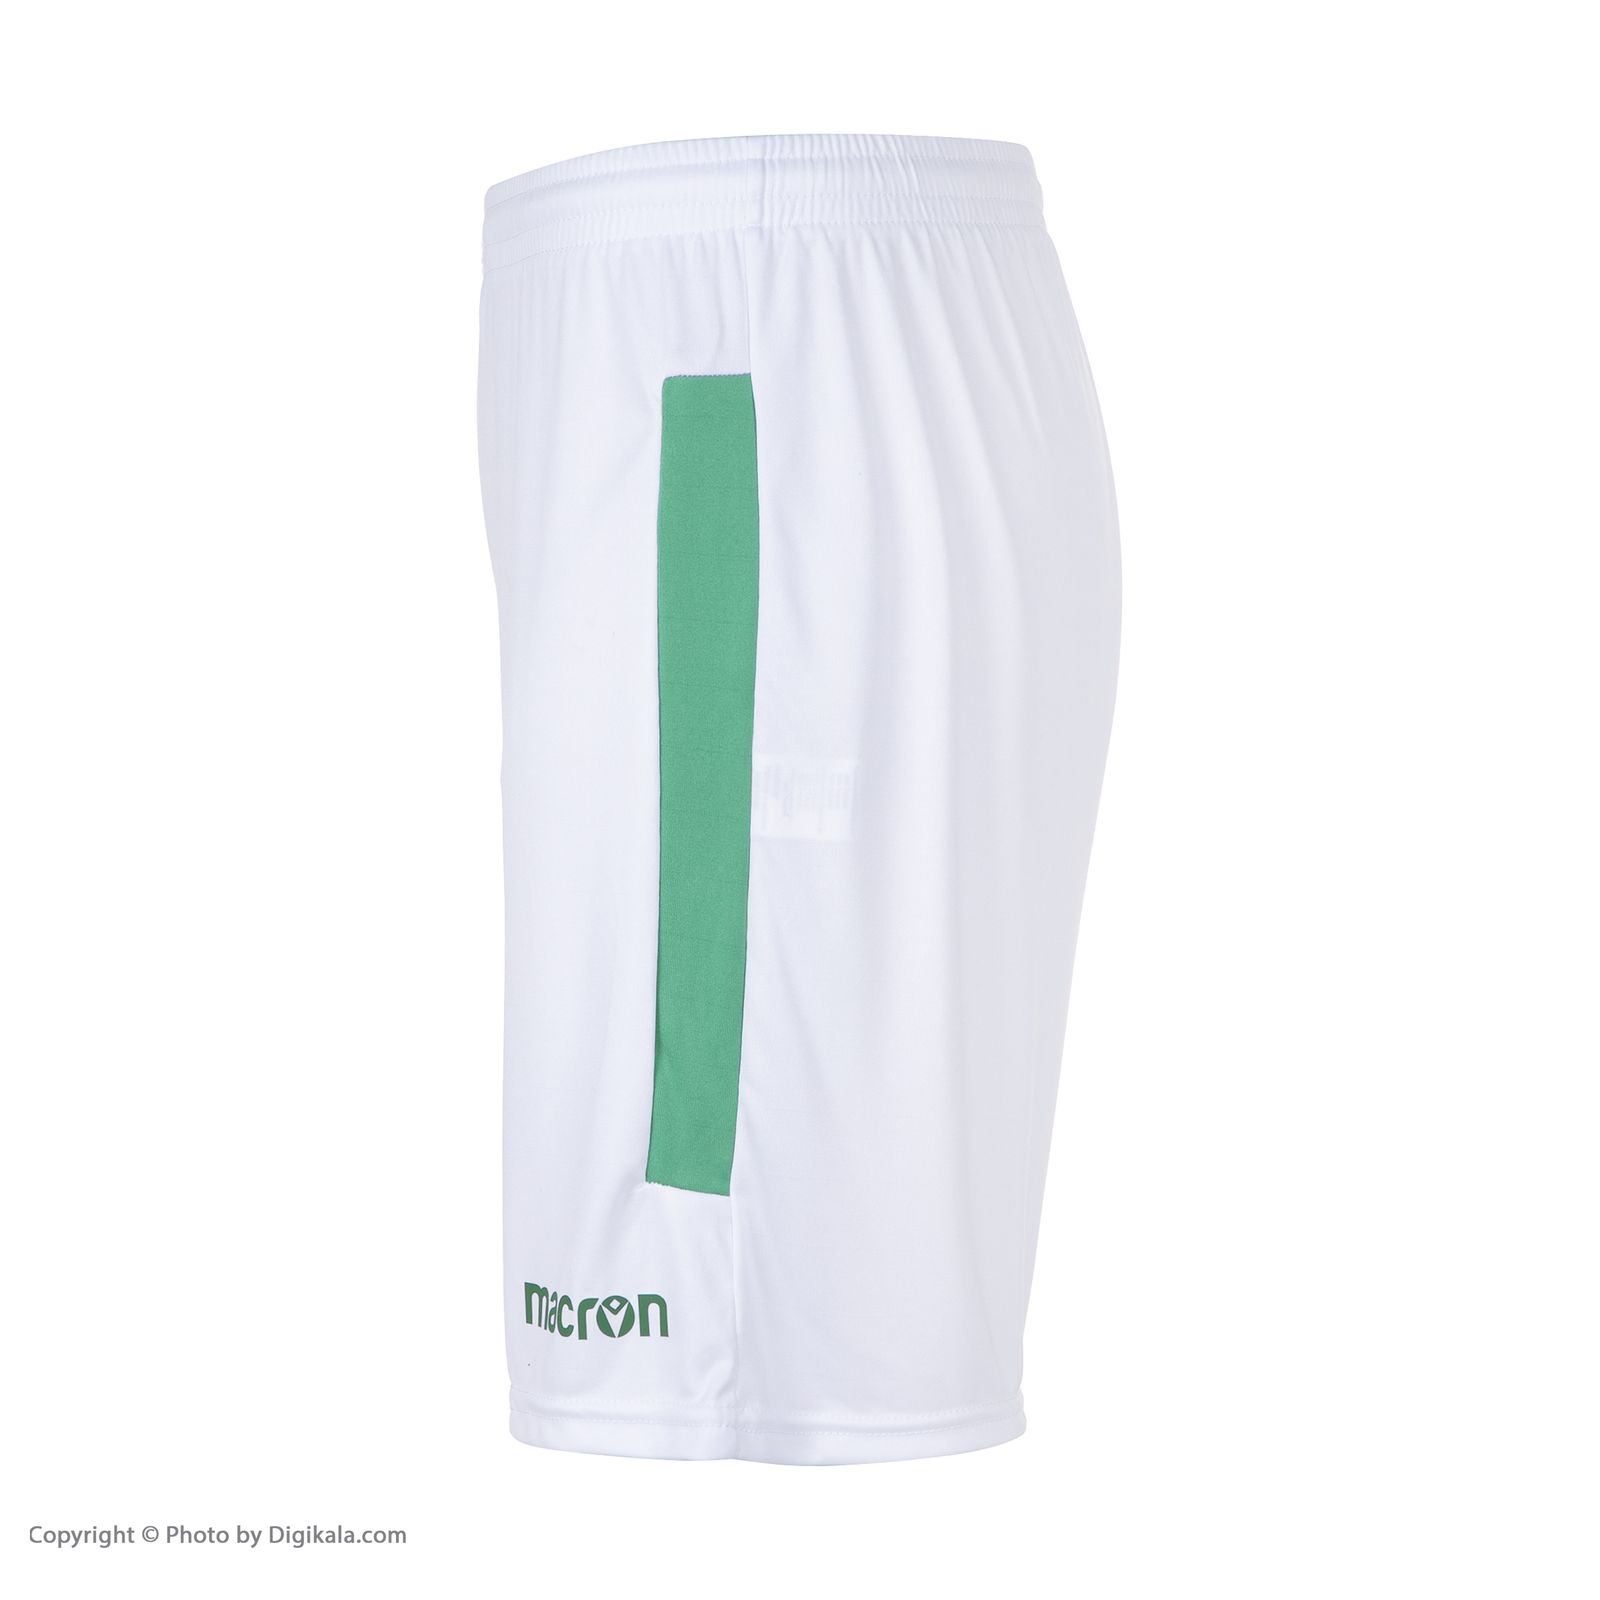 ست پیراهن و شورت ورزشی مردانه مکرون مدل پالرمو رنگ سبز  -  - 7